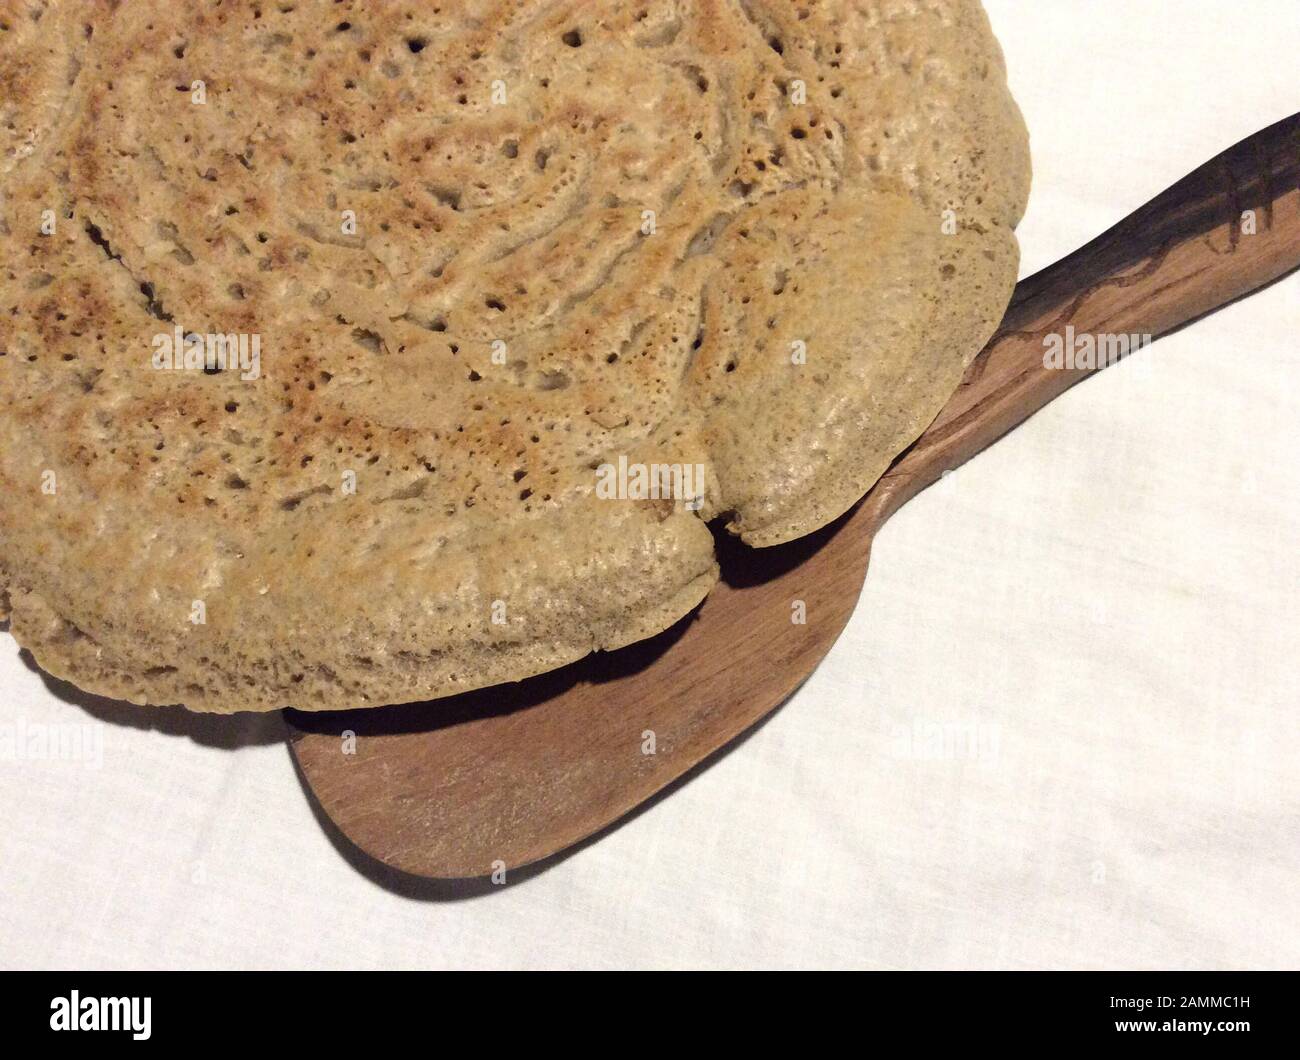 Pain plat injera à base de farine de thé. Teff également appelé millet nain, appartient à la famille de l'herbe douce. L'aire de répartition naturelle est en Éthiopie et en Érythrée, mais l'espèce est également cultivée dans d'autres régions tropicales et subtropicales. Les graines sont sans gluten et riches en acides gras essentiels. Ce type de millet est le grain le plus important en Ethiopie. Il est transformé en pain plat et en bière ou est également utilisé comme aliments pour animaux [traduction automatique] Banque D'Images